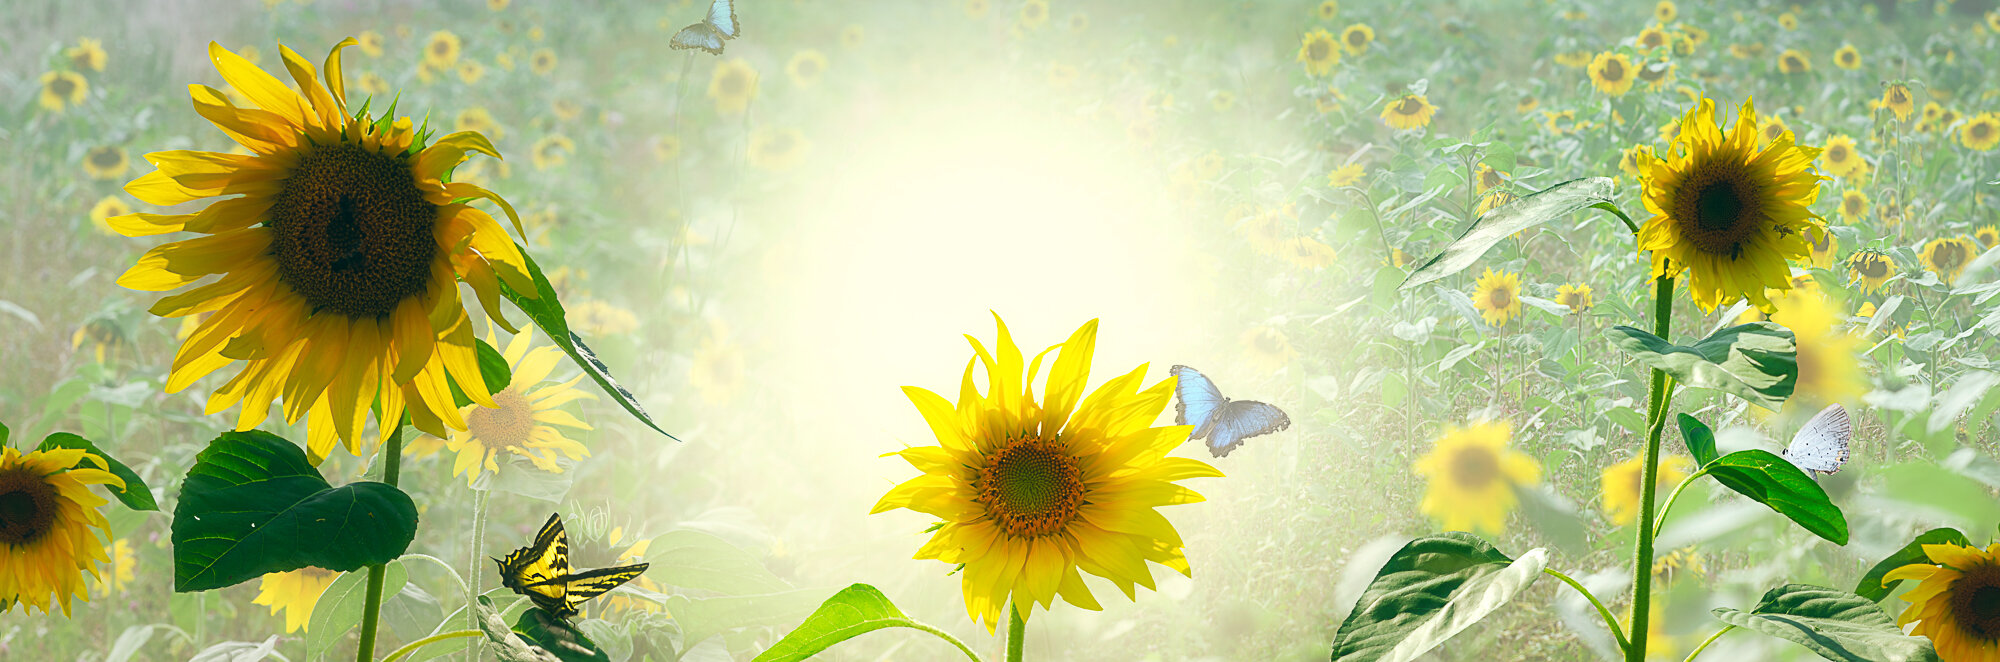 Sunflower delight